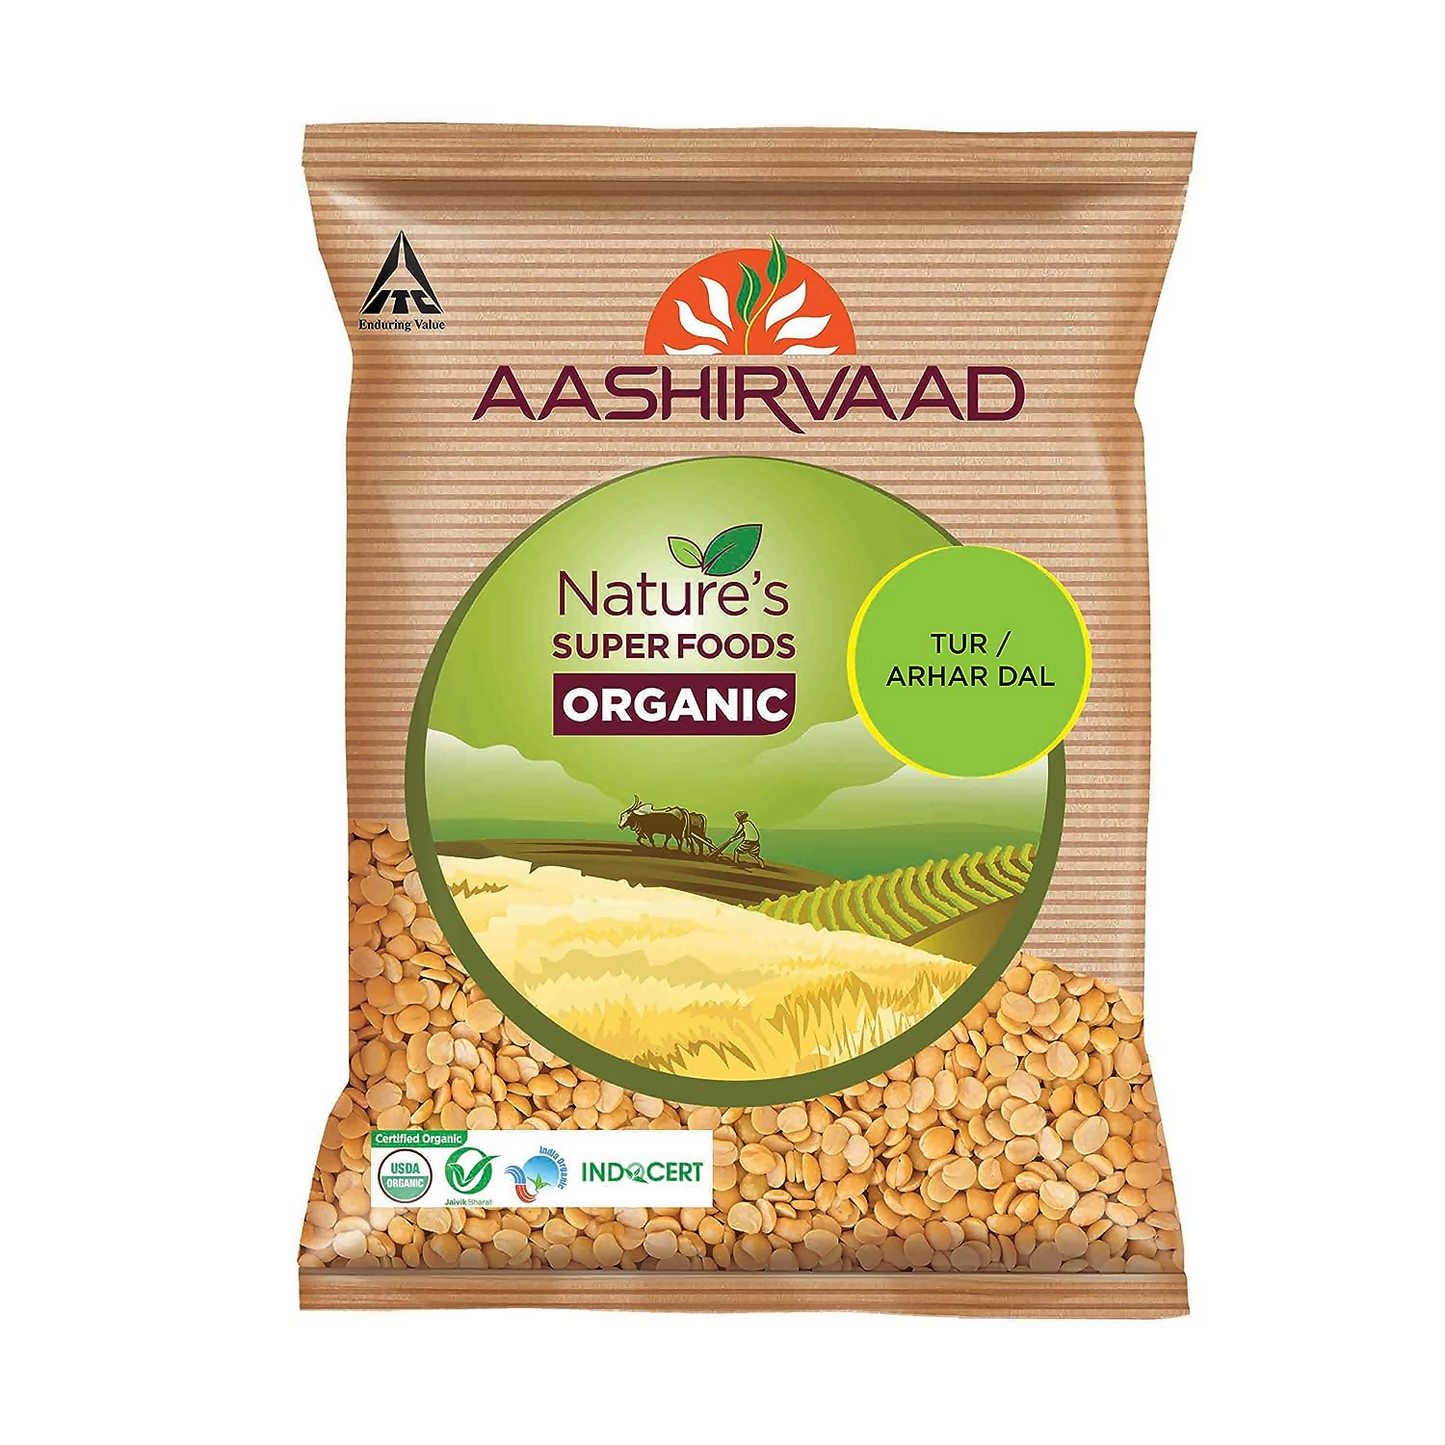 Aashirvaad Nature's Super Foods Organic Tur Dal - BUDNE